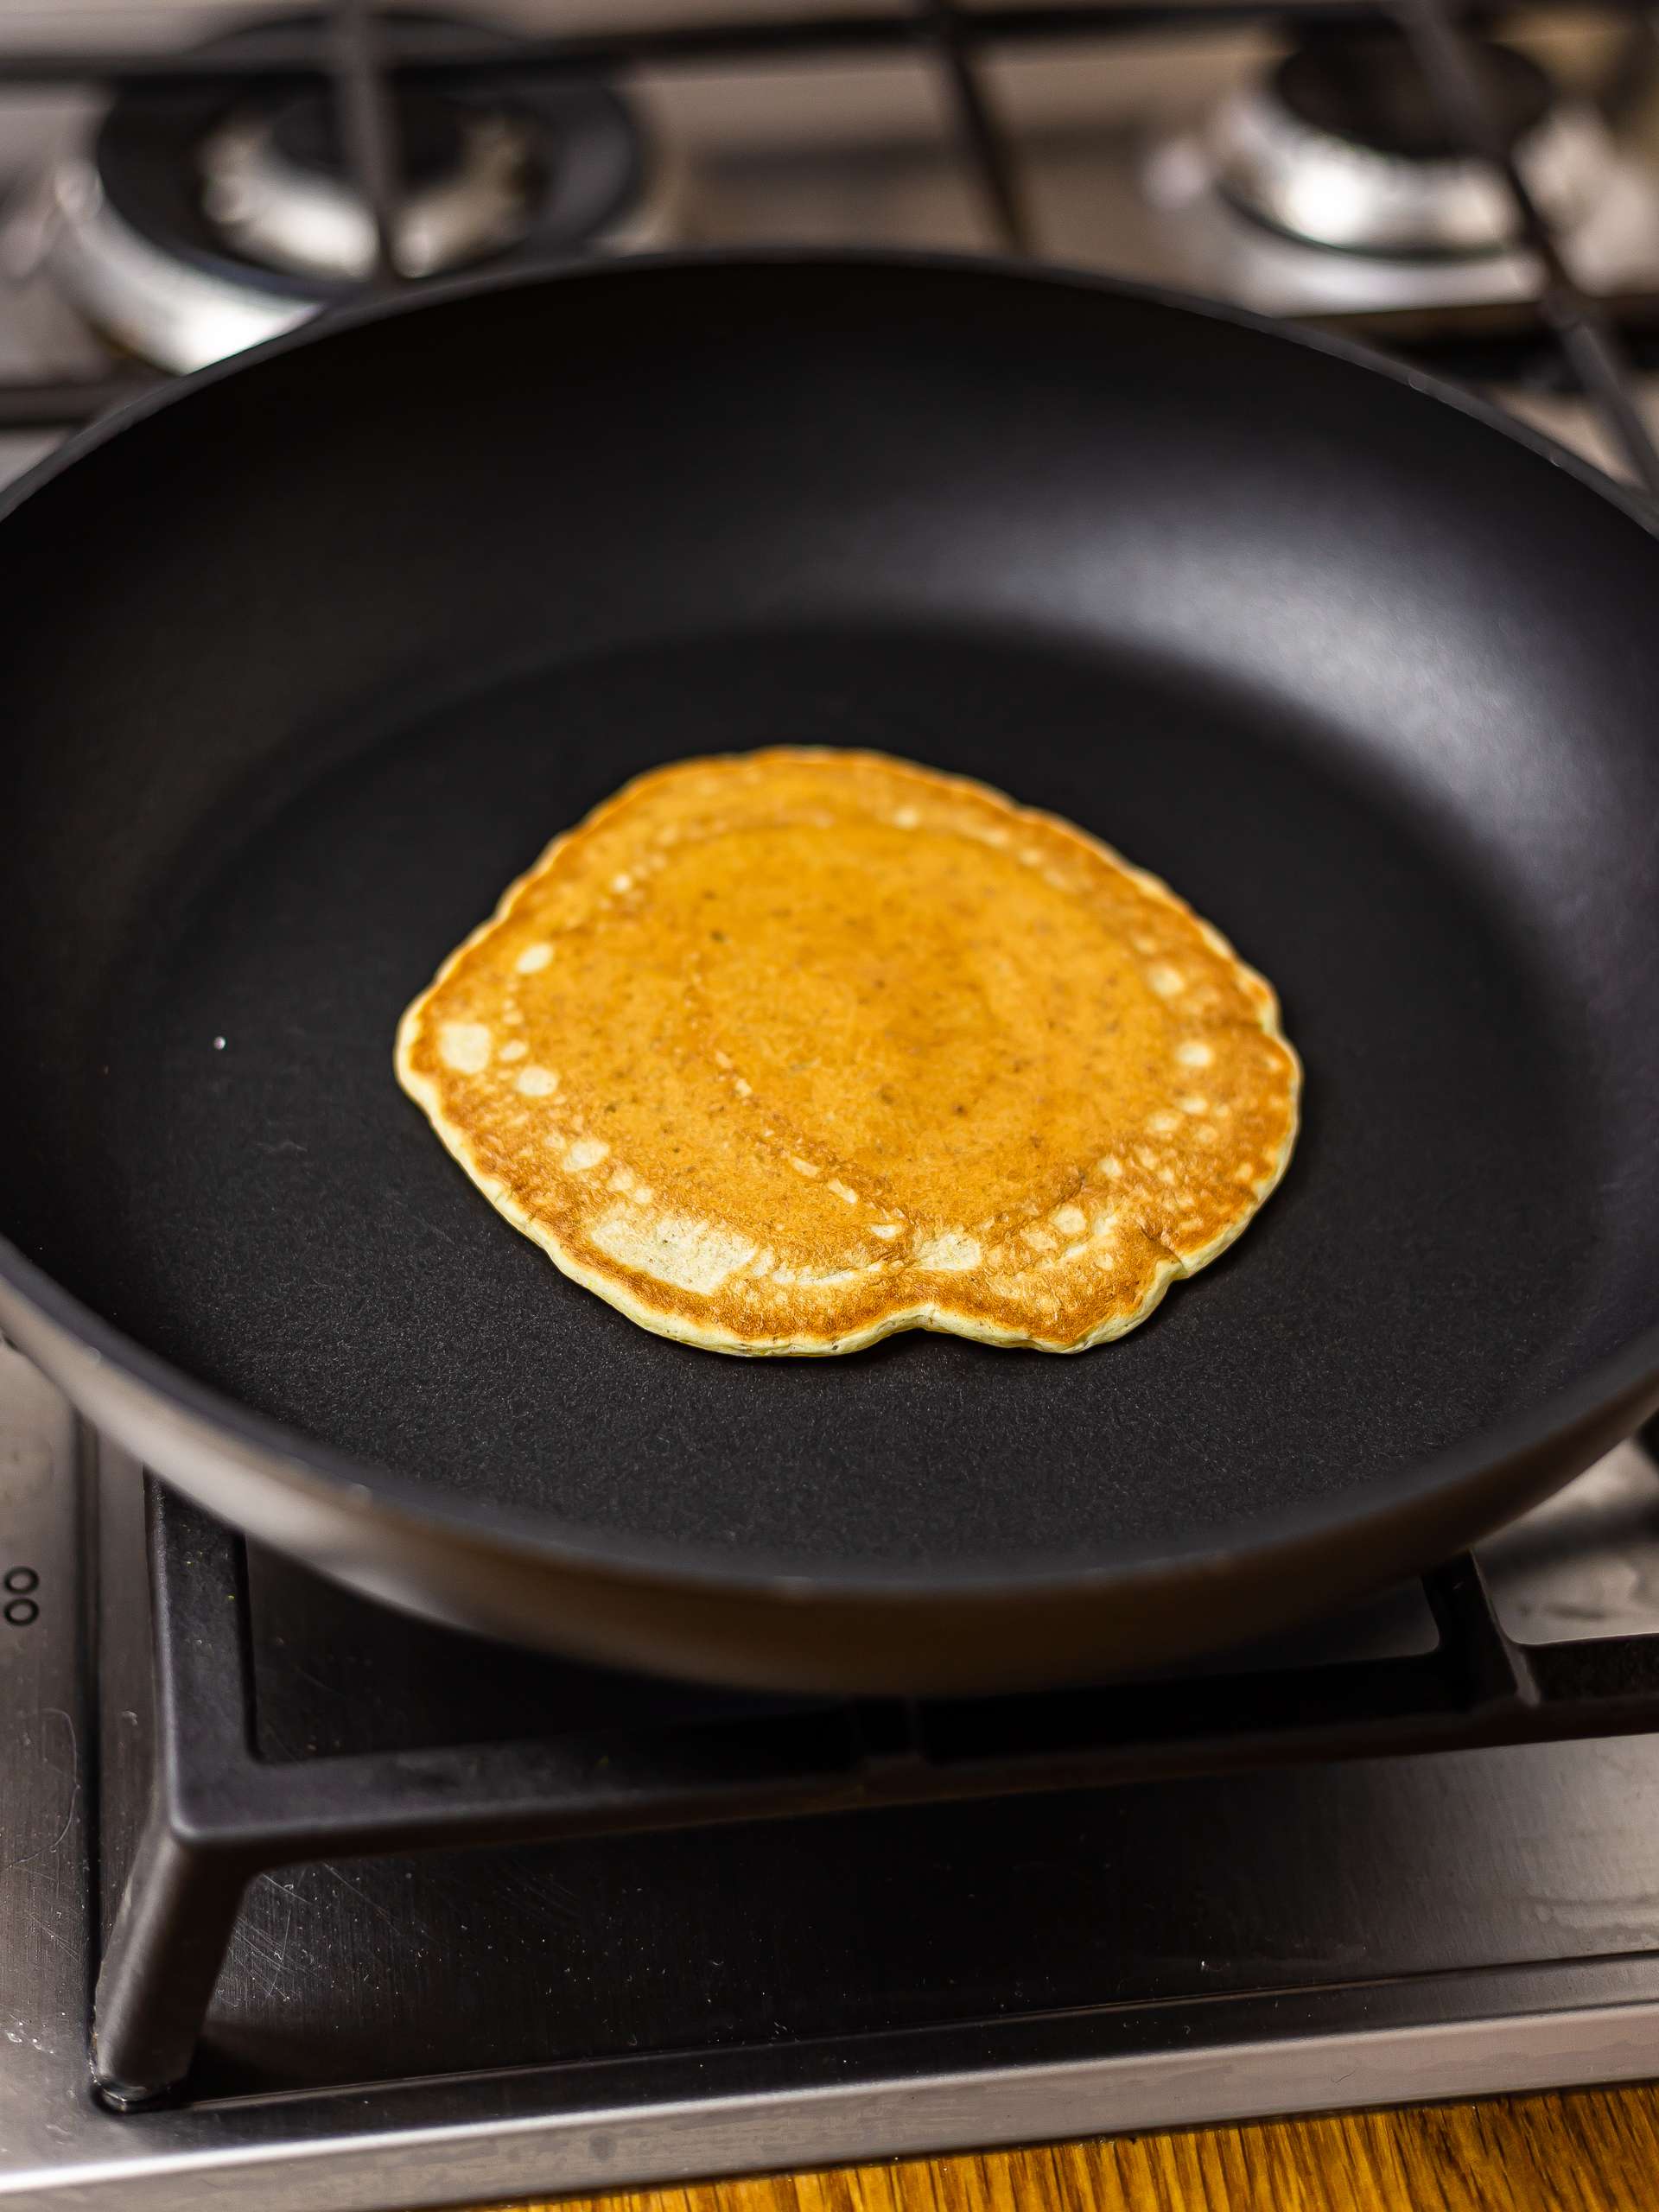 sourdough pancake in a skillet